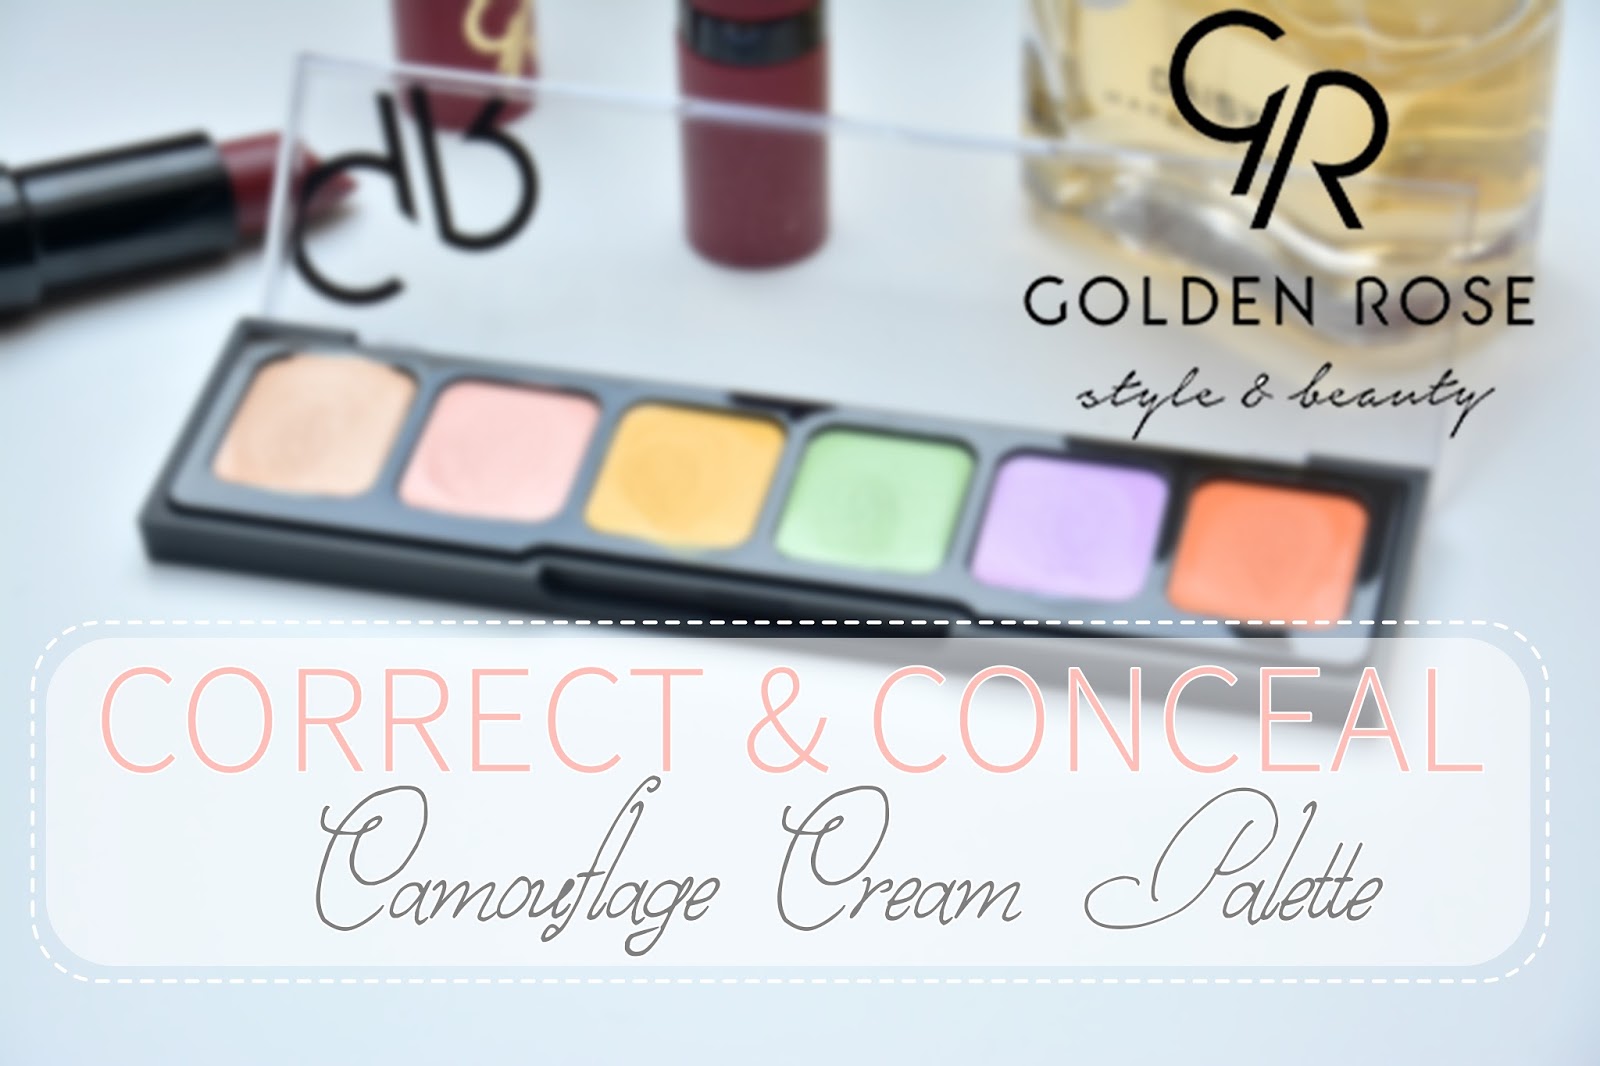 IMAGINE DAY | Sara Sycz: Golden Rose camouflage cream palette